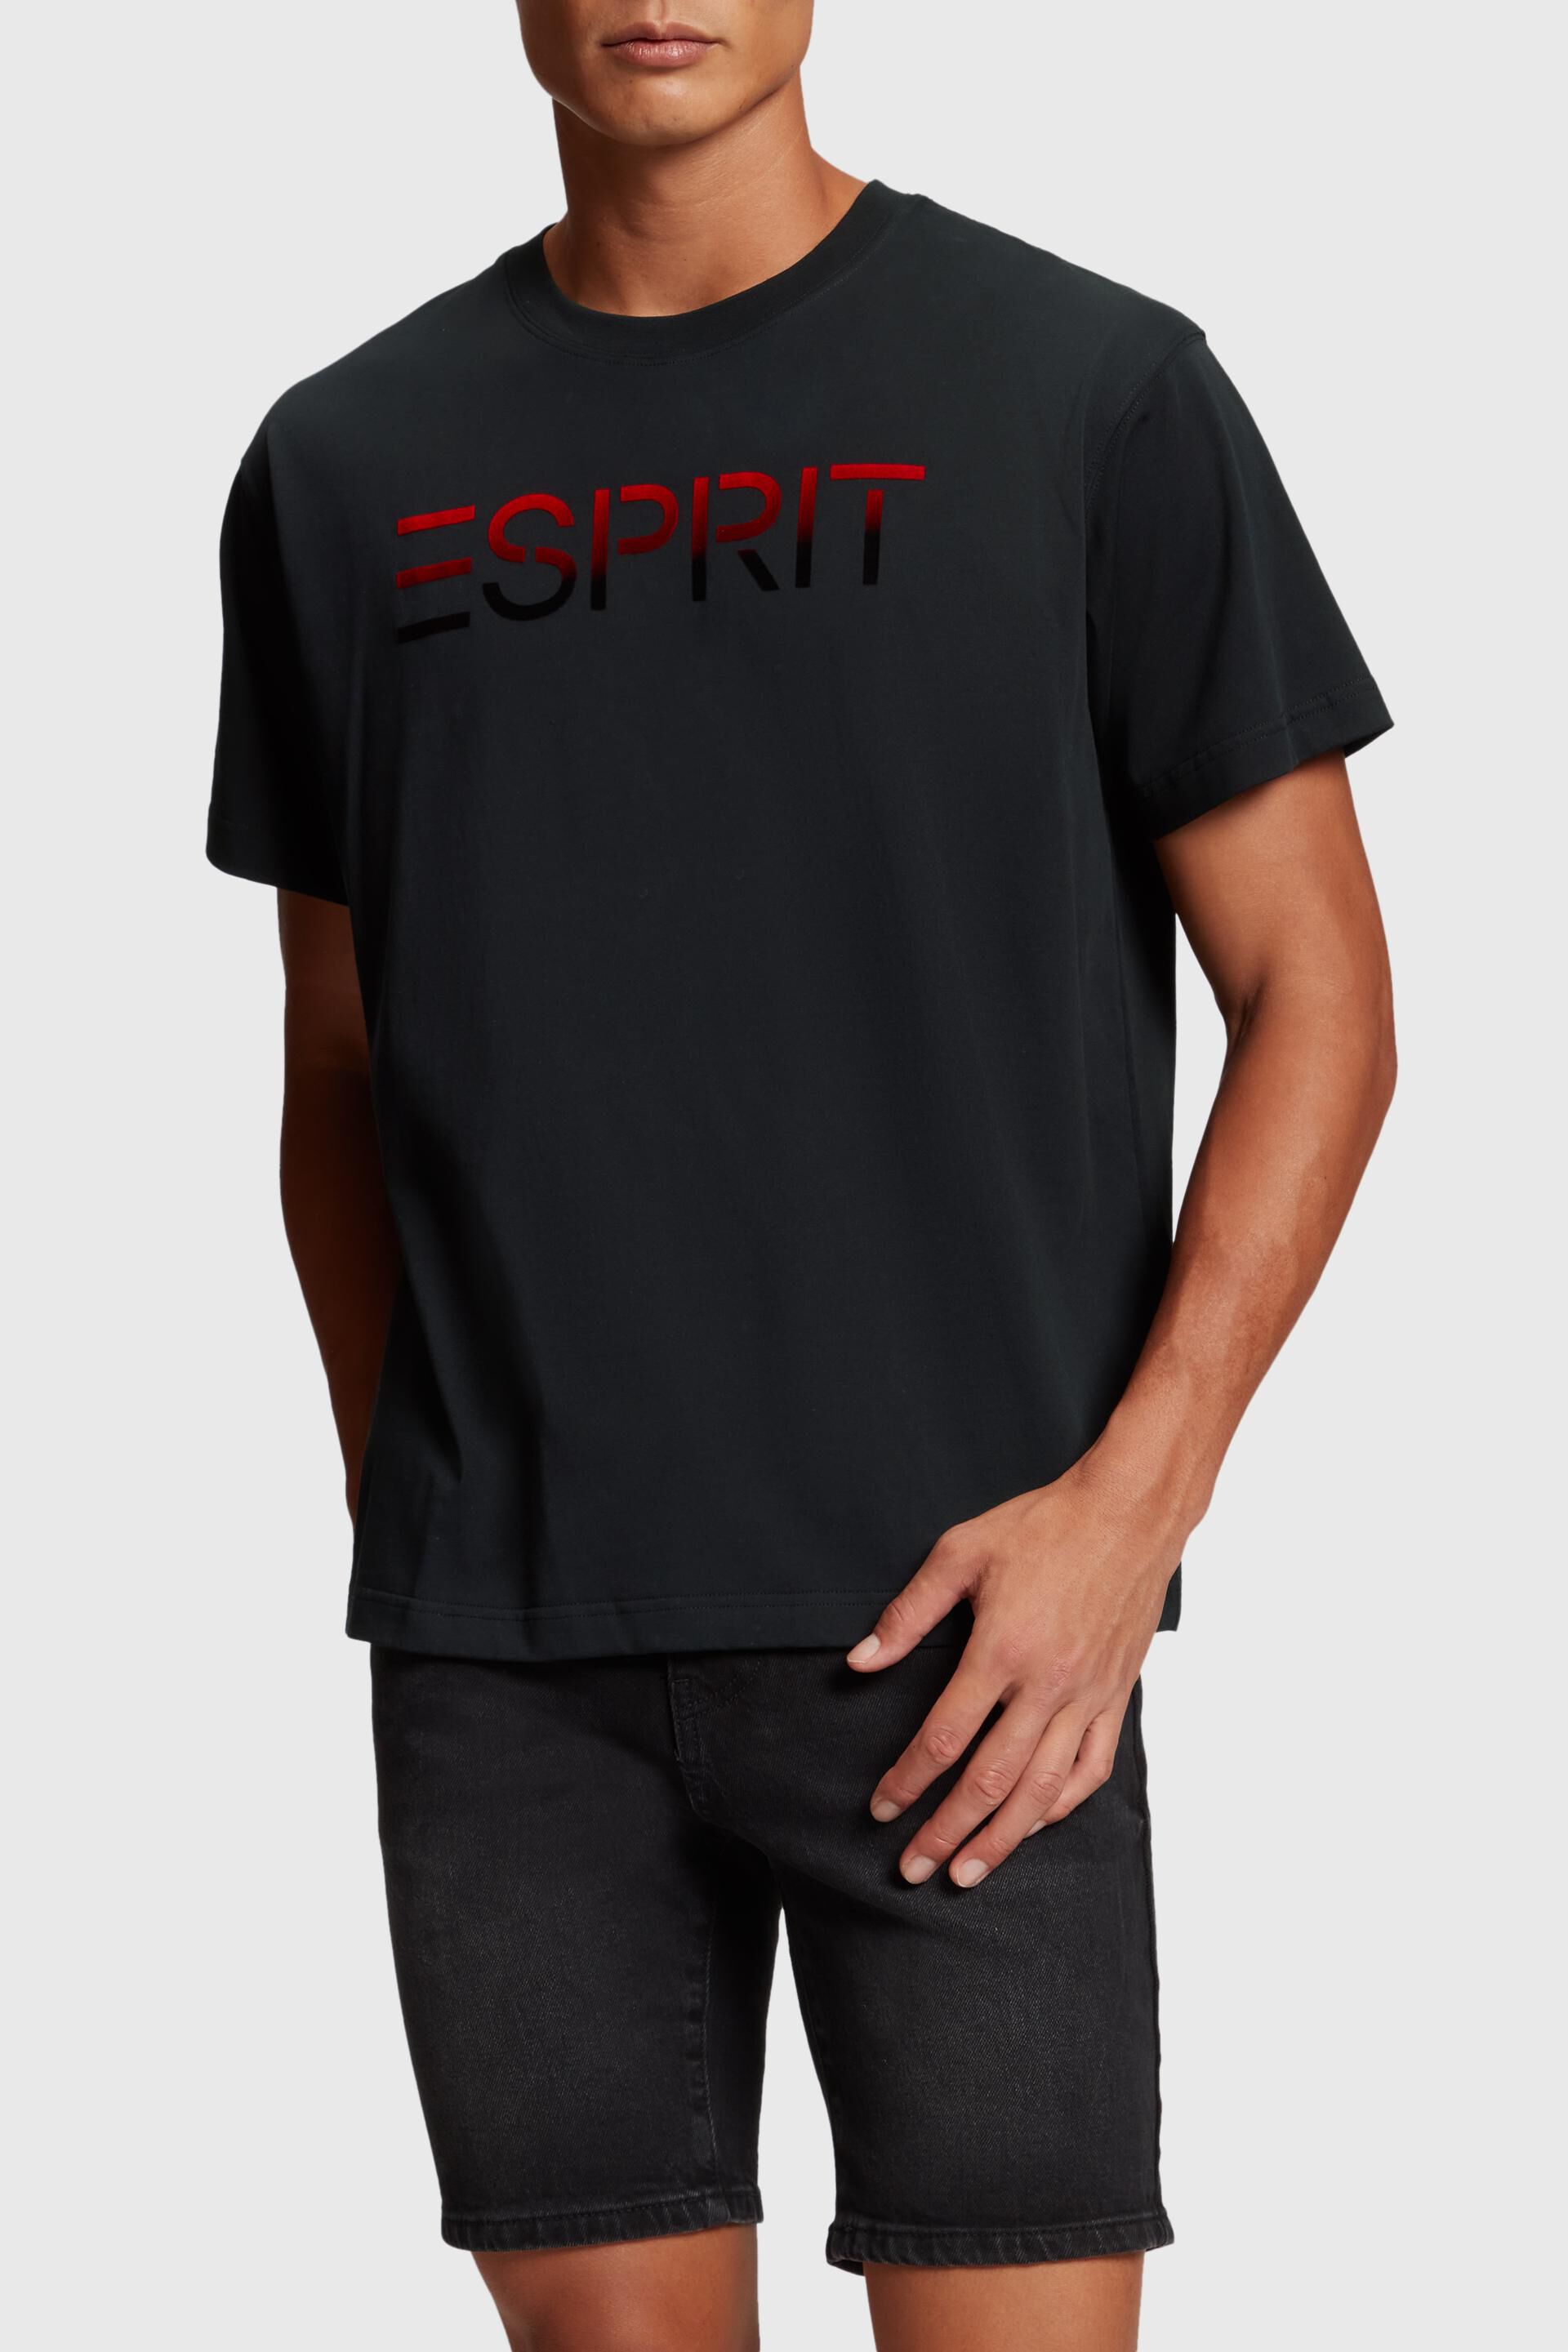 Esprit applique logo flocked Chest t-shirt